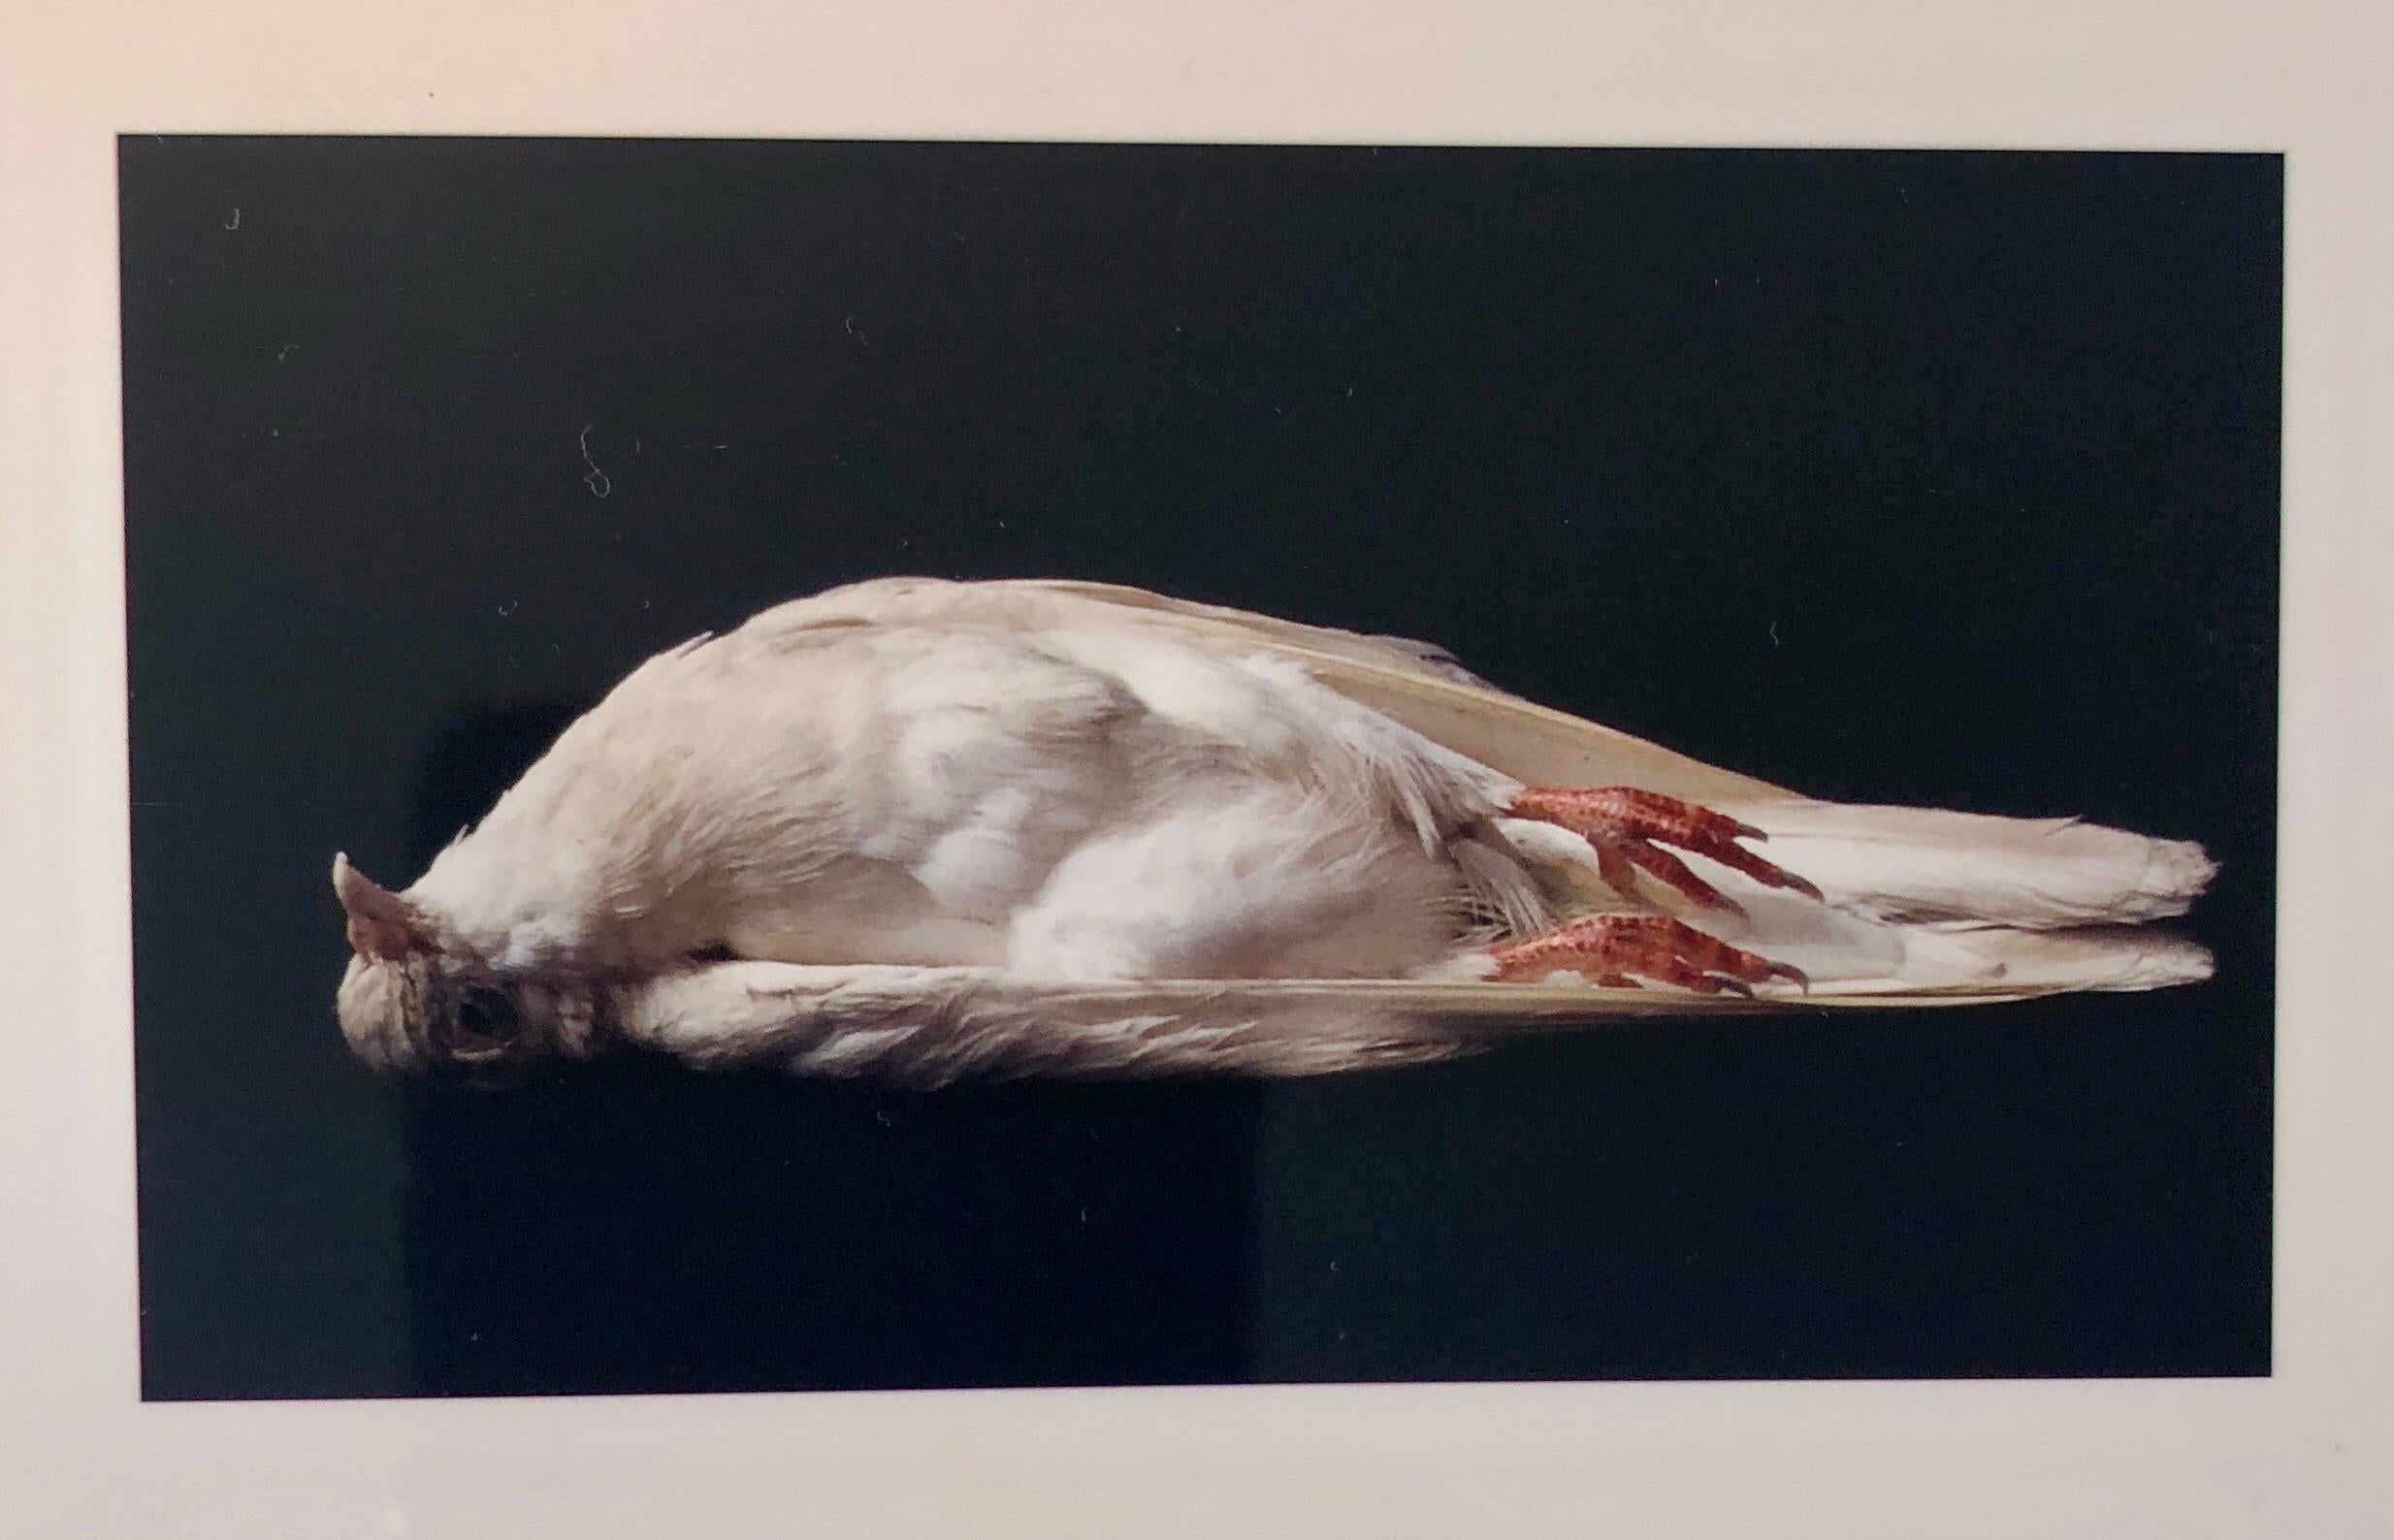 Brenda Zlamany Color Photograph - Birds, Cibachrome Photograph Print, Signed Conceptual Art